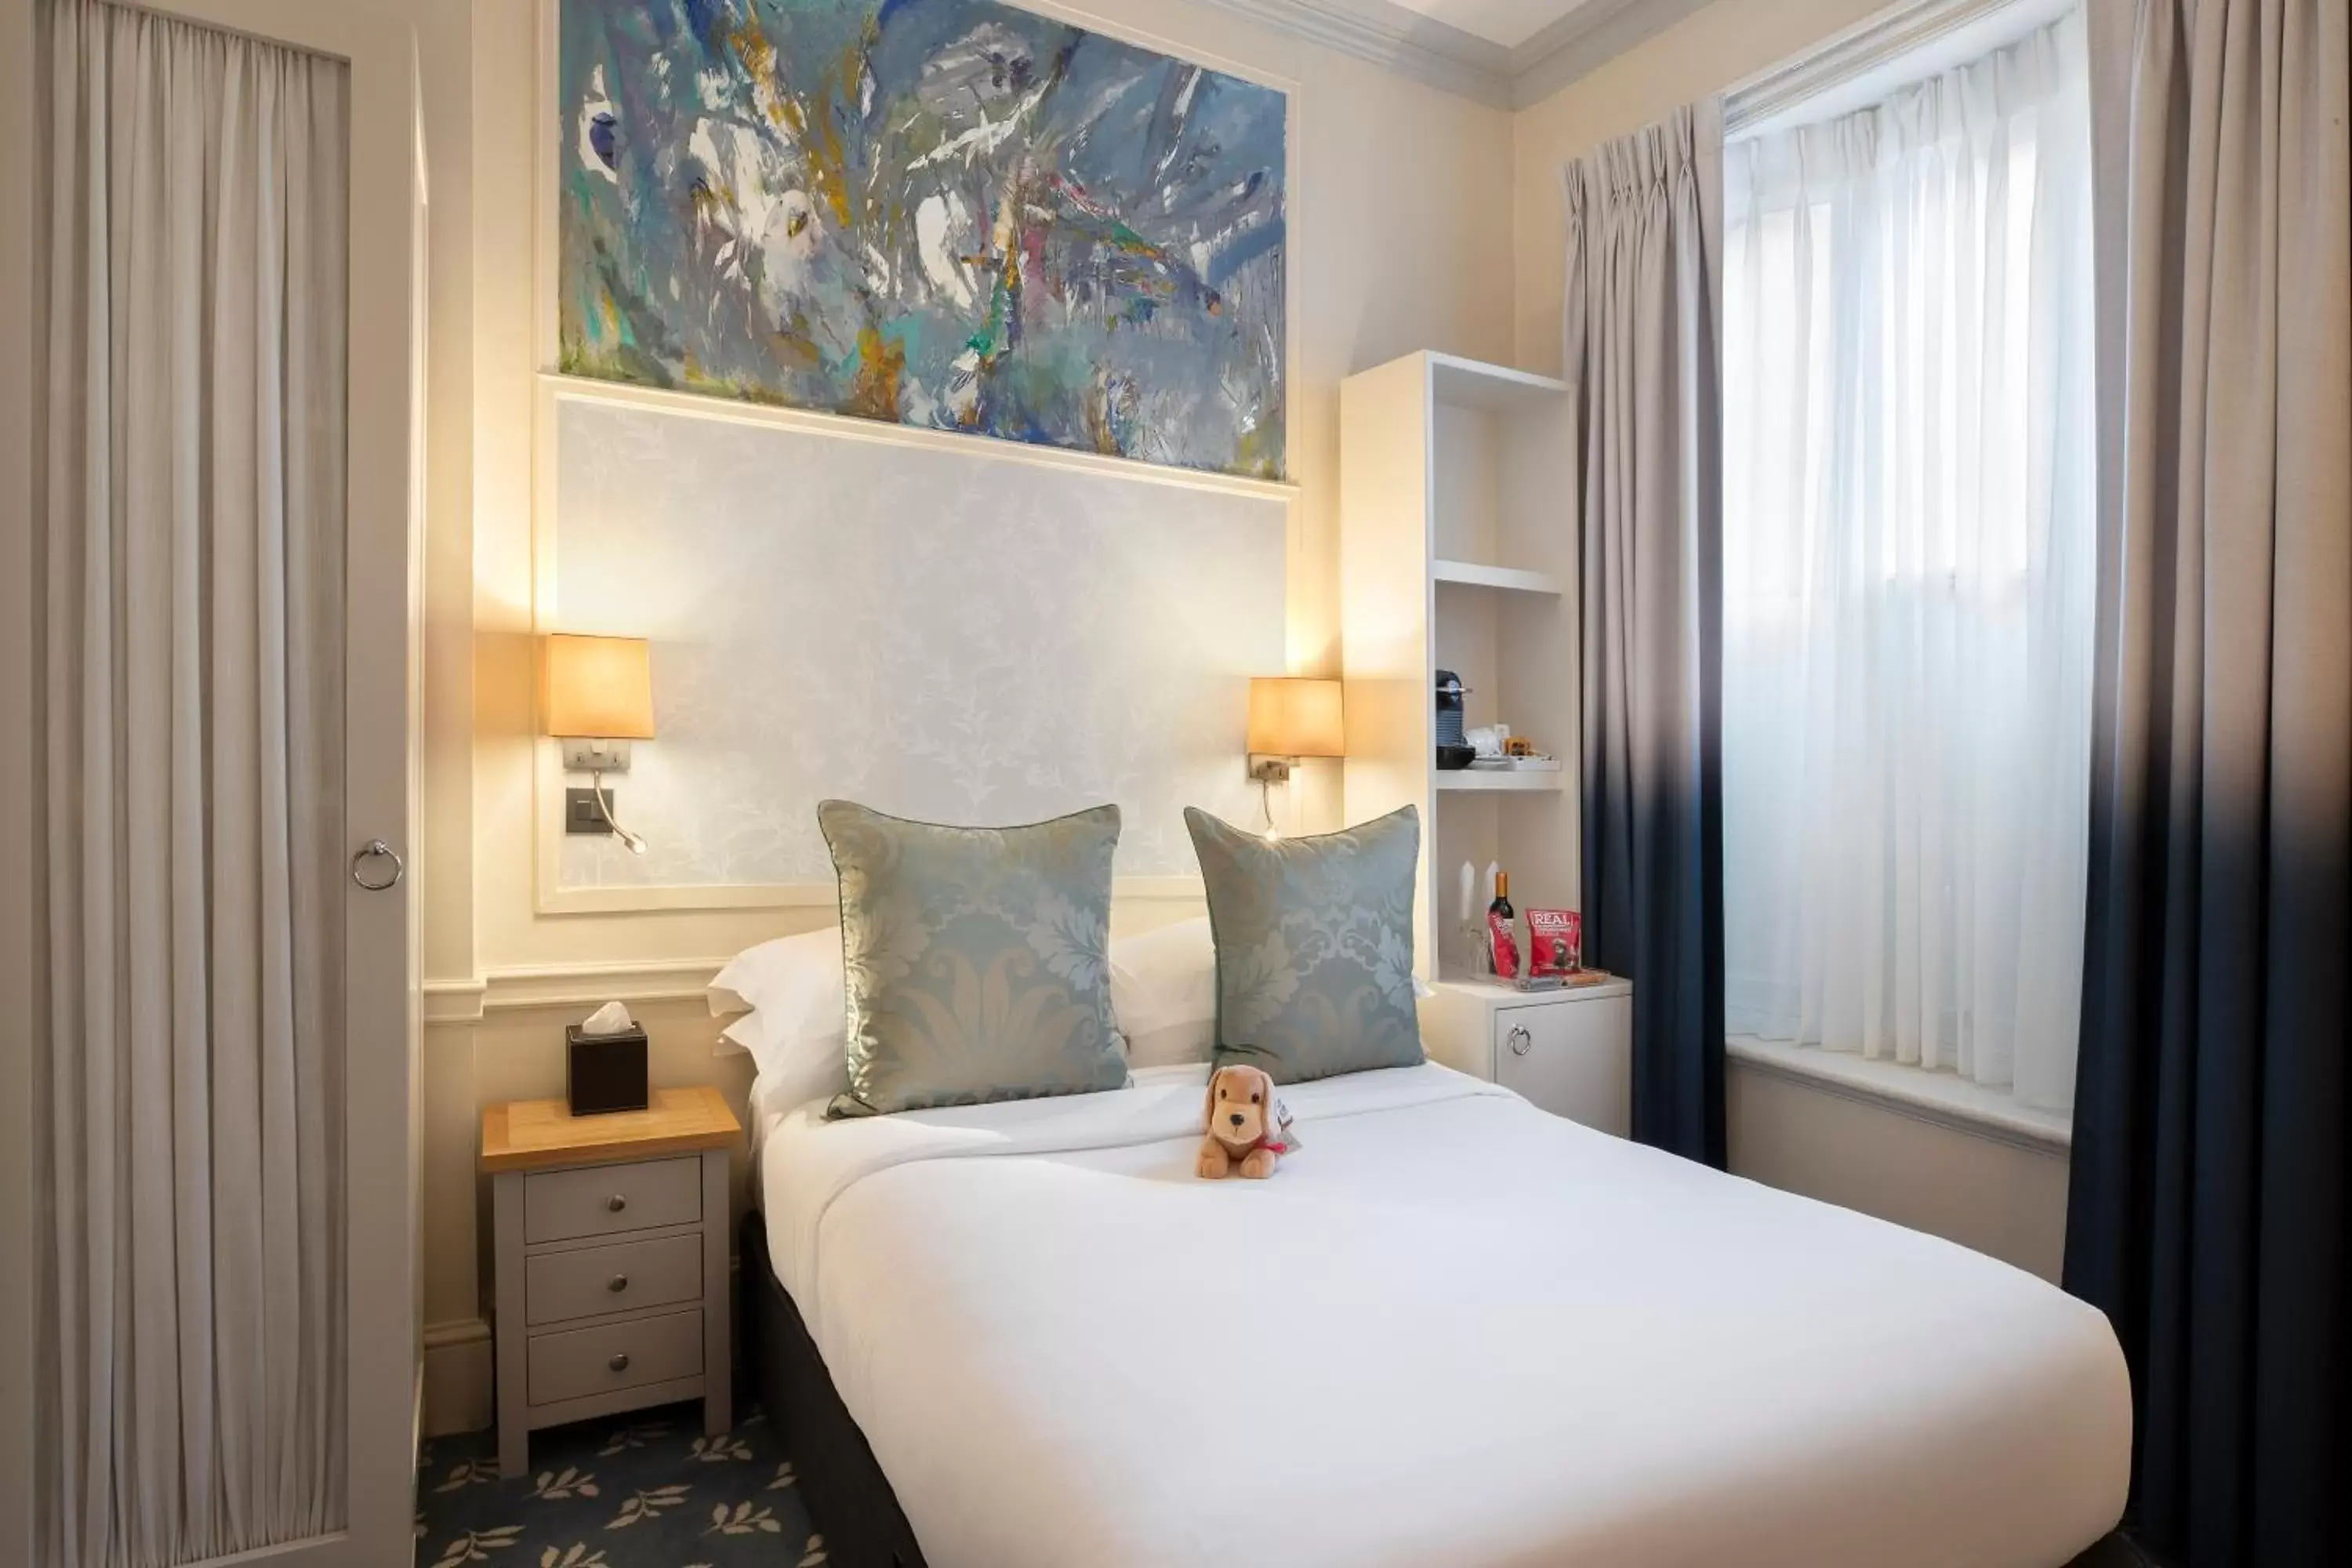 Bed in Sloane Square Hotel